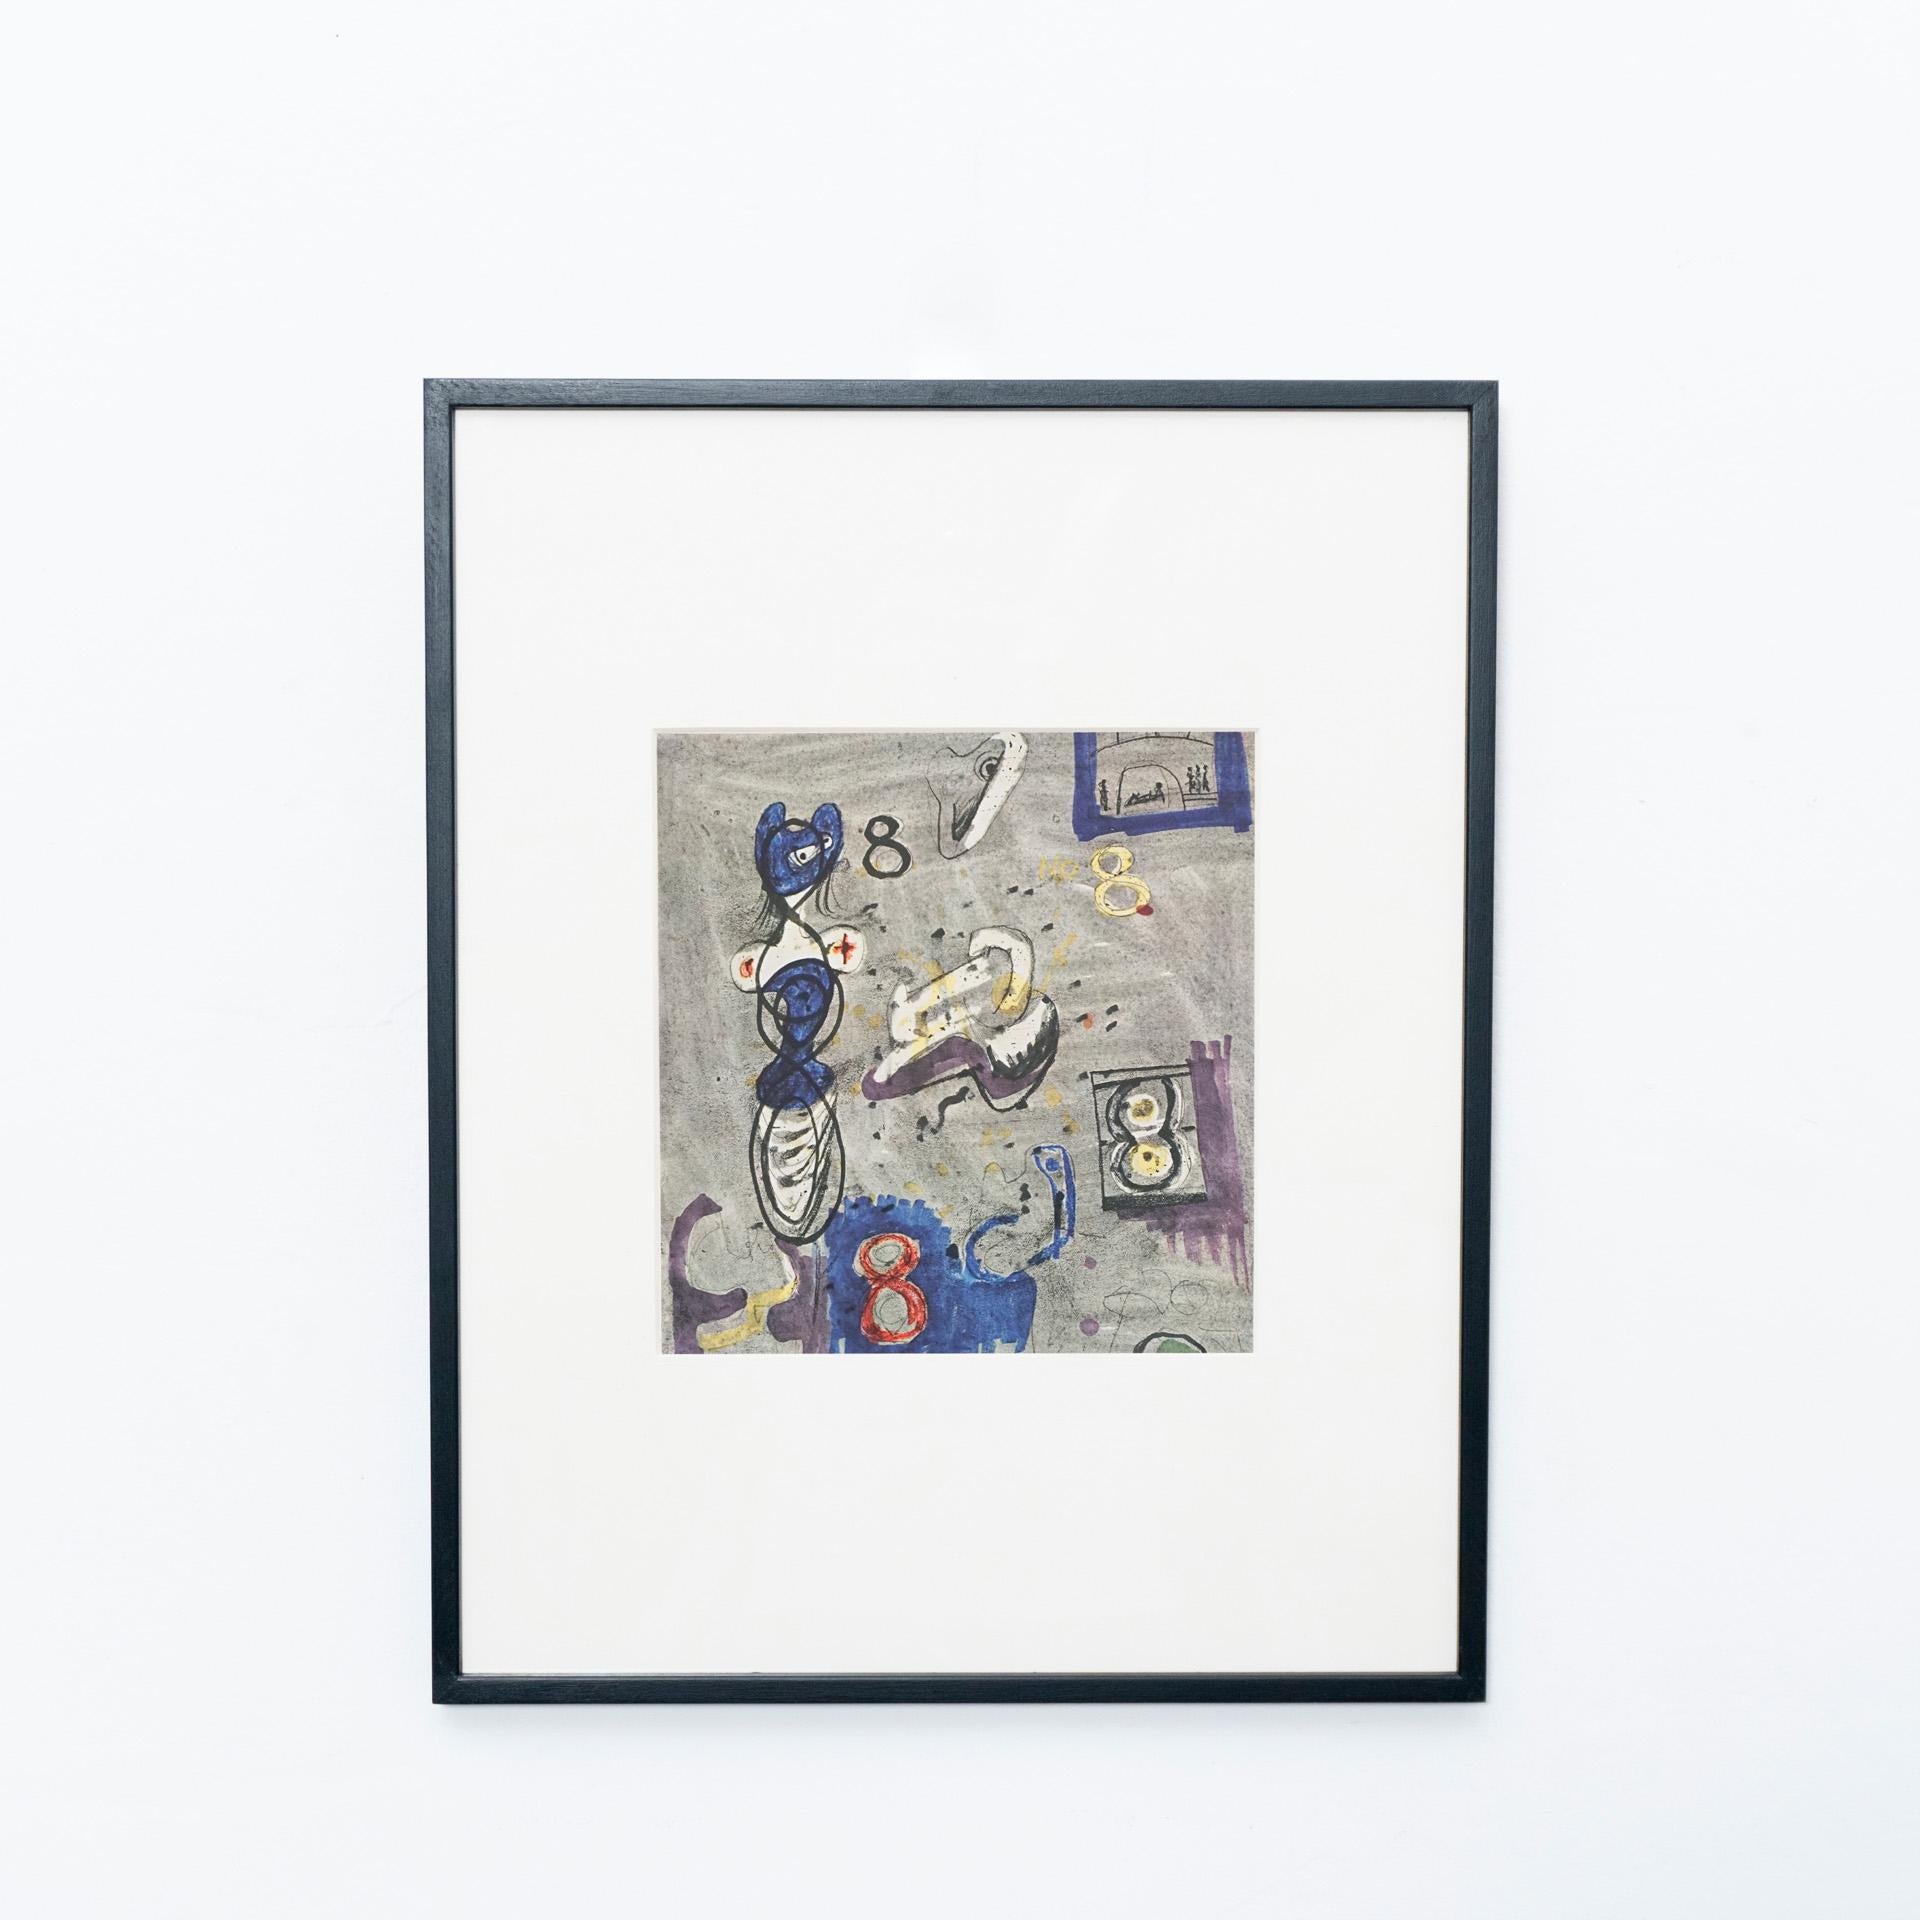 Signierte Fotolithografie von Henry Moore, 1971.

Gestempelte Rotationstiefdruck-Reproduktion einer Serie von Bolaffiarte. Limitierte Auflage von 5000 Stück.

Beispielhafte Nummer 279.

Handsigniert mit Bleistift.

Die Fotolithografie wird